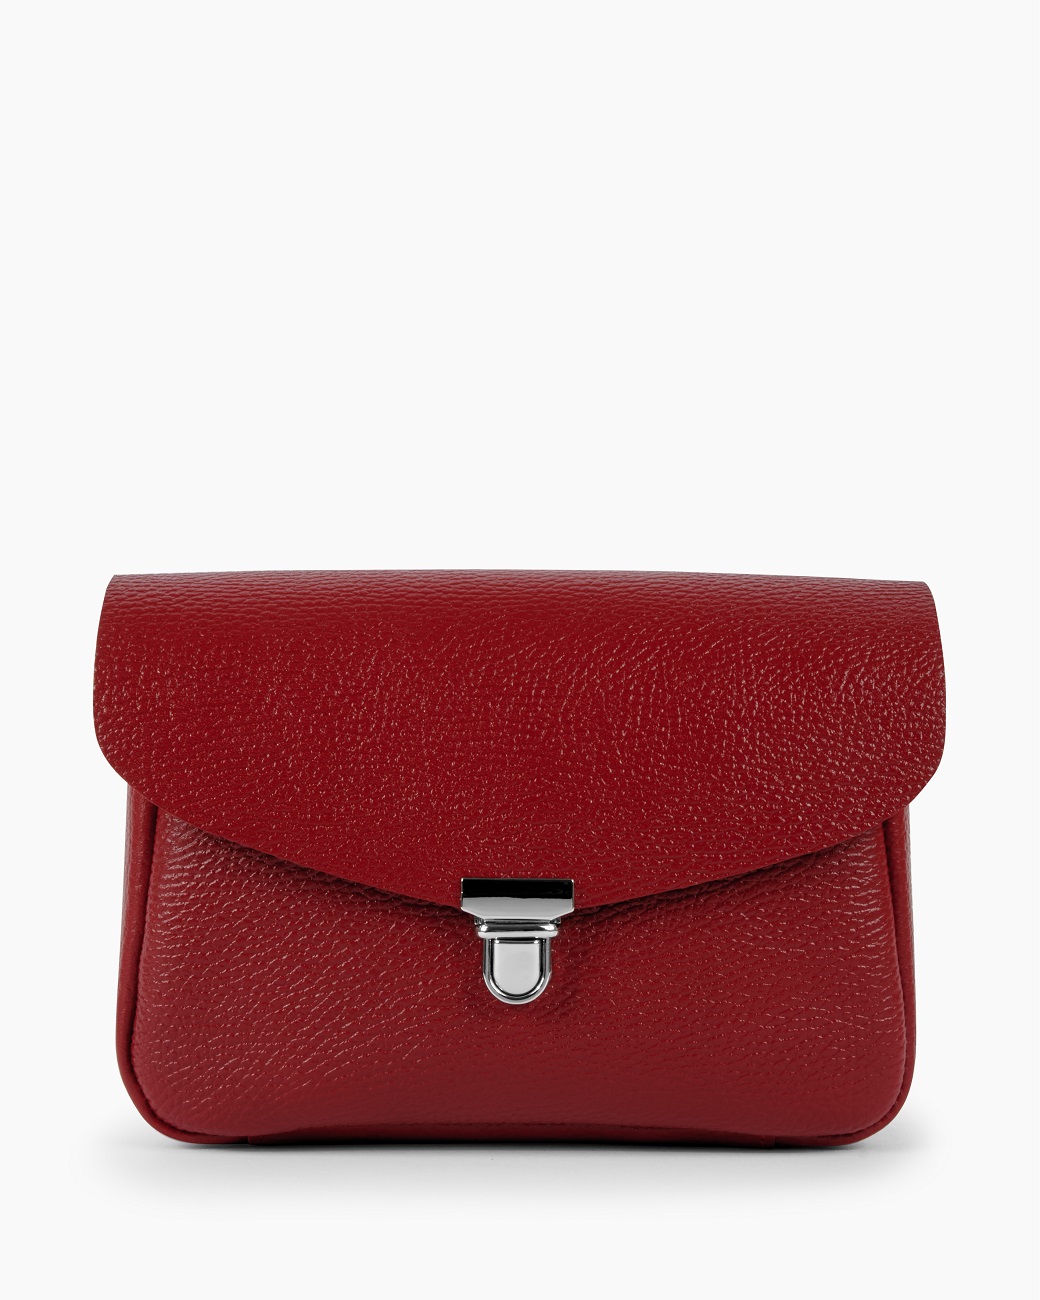 Женская сумка через плечо из натуральной кожи красная A001 ruby grain